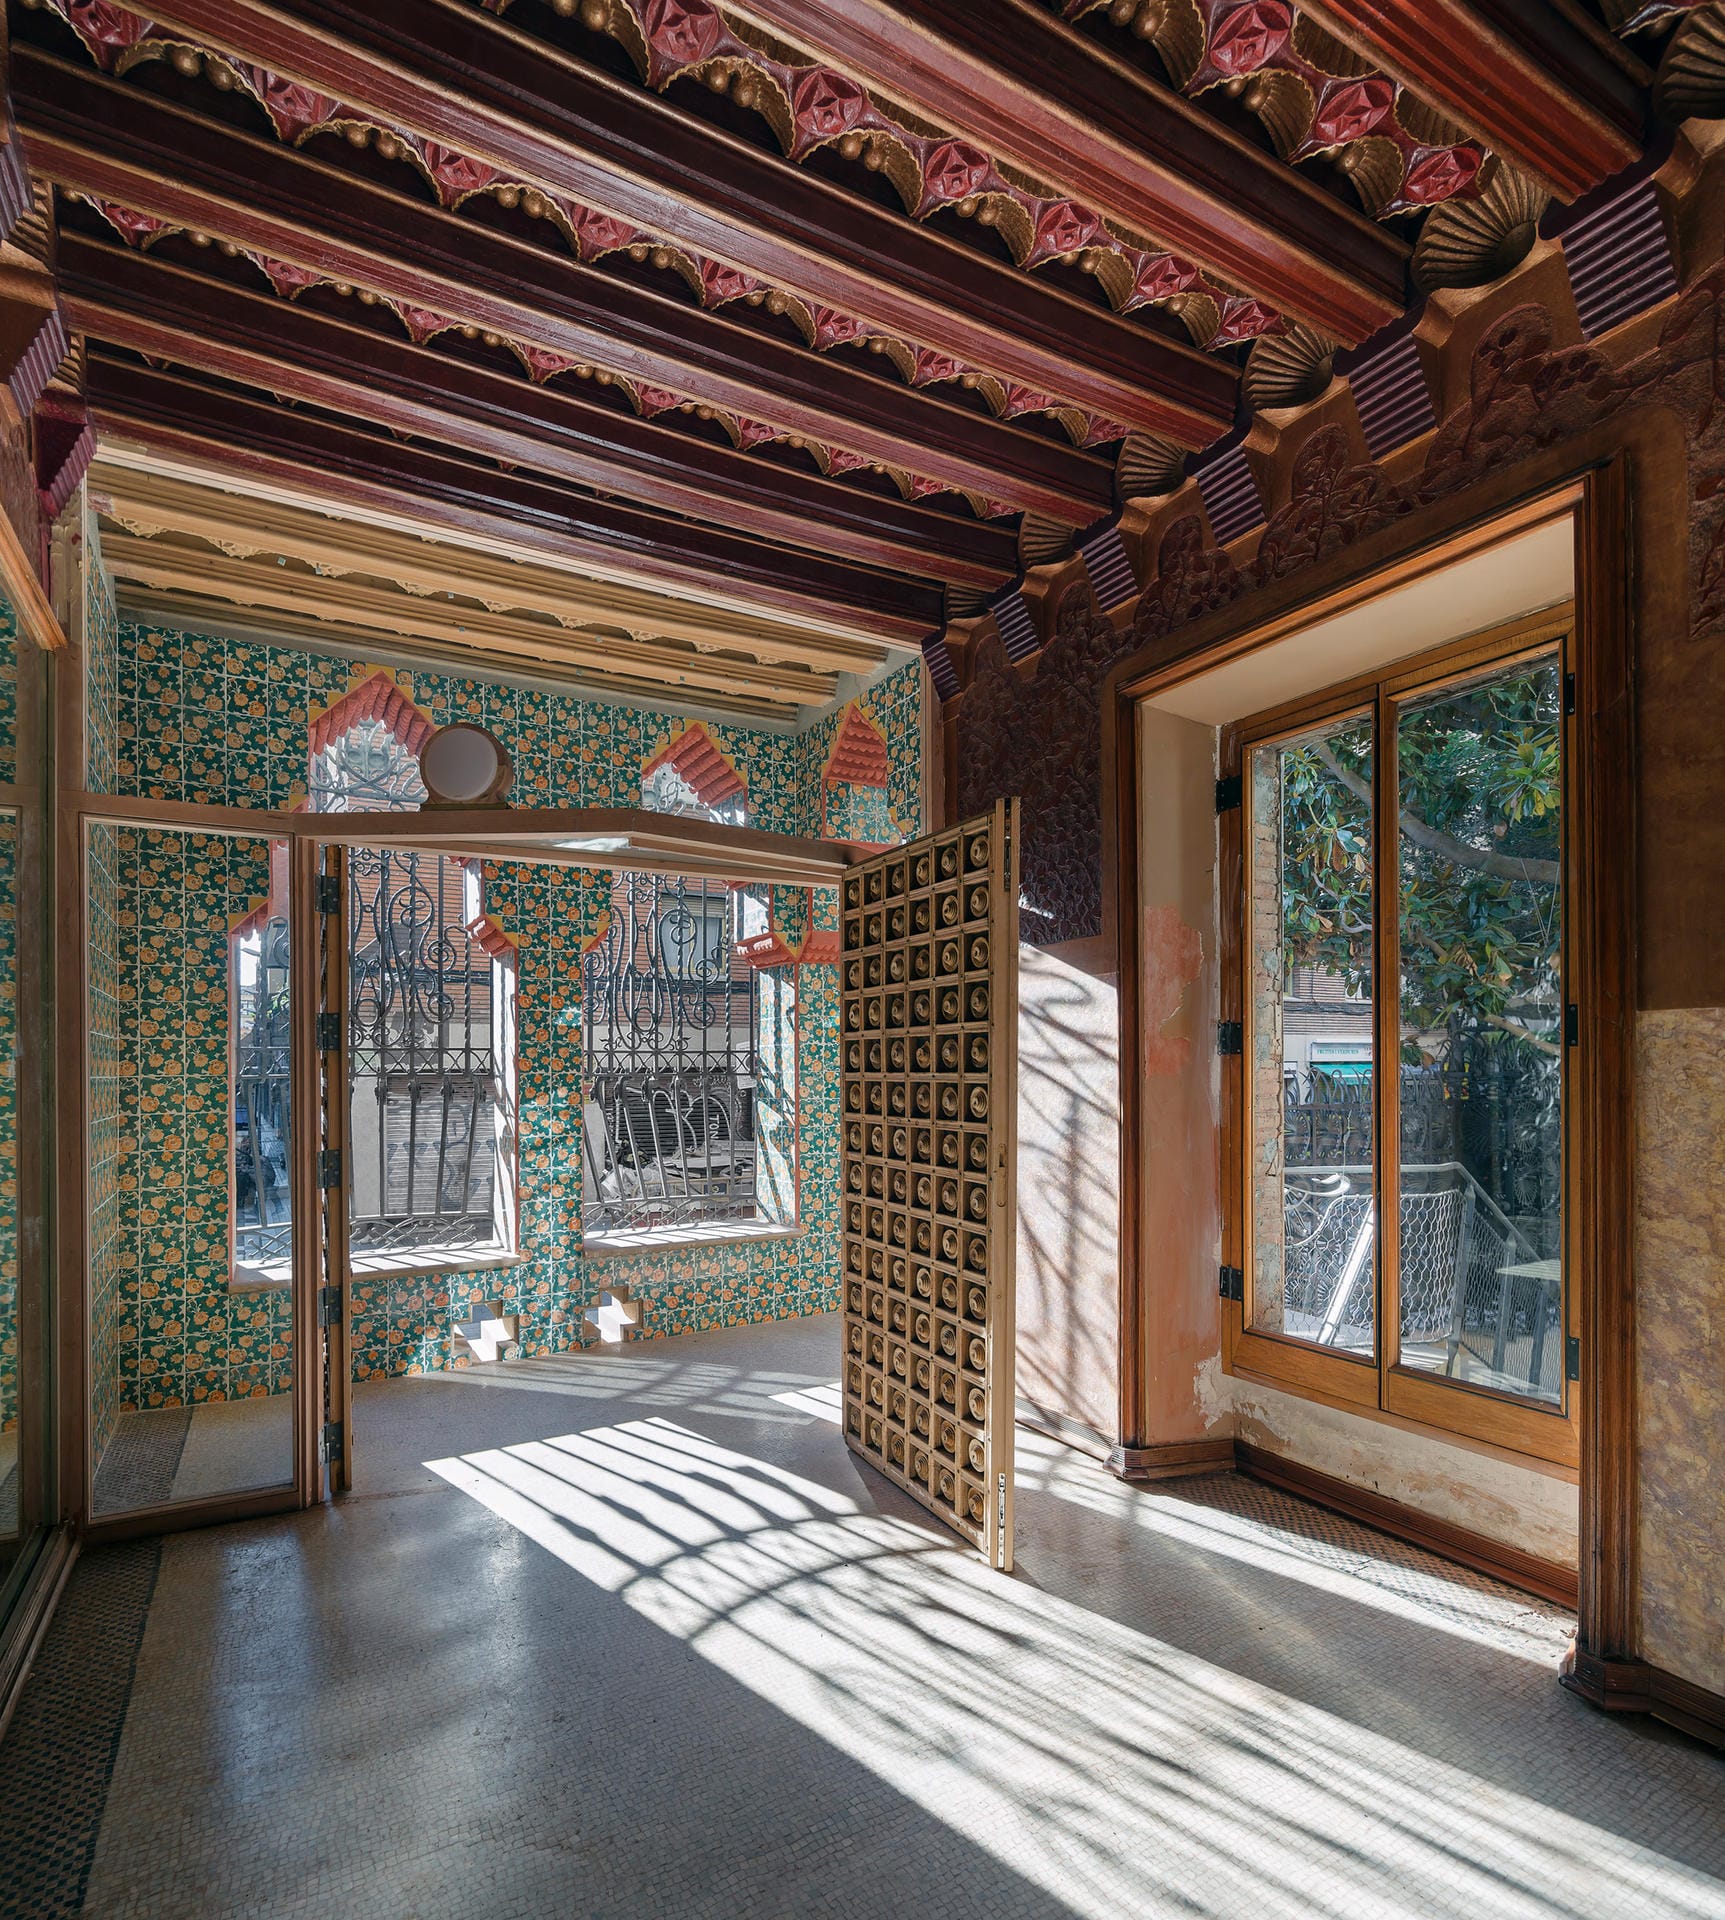 Wer Gaudi kennt, erkennt auch sofort seinen unverwechselbaren Stil.